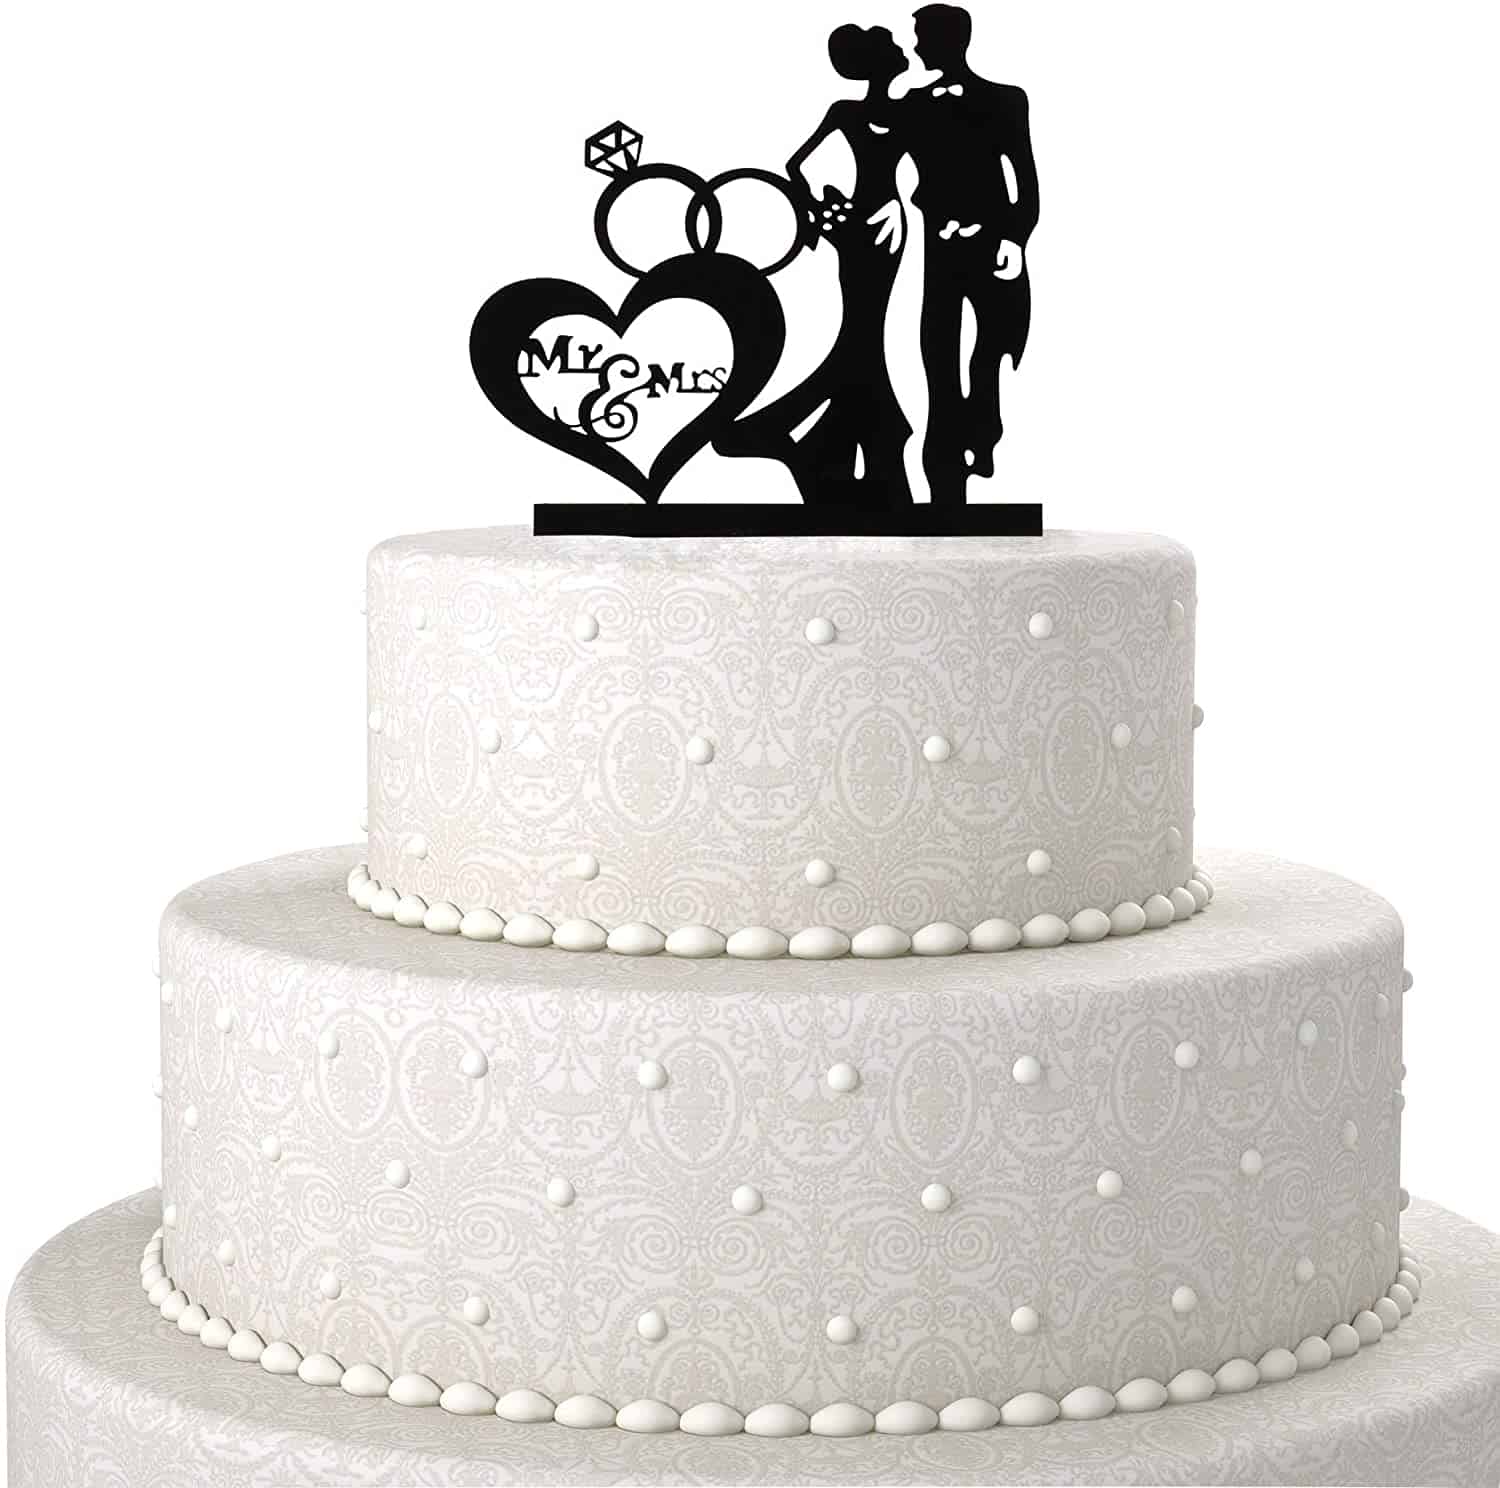 Cake topper Just Married acrylique noir : decor gateau mariage